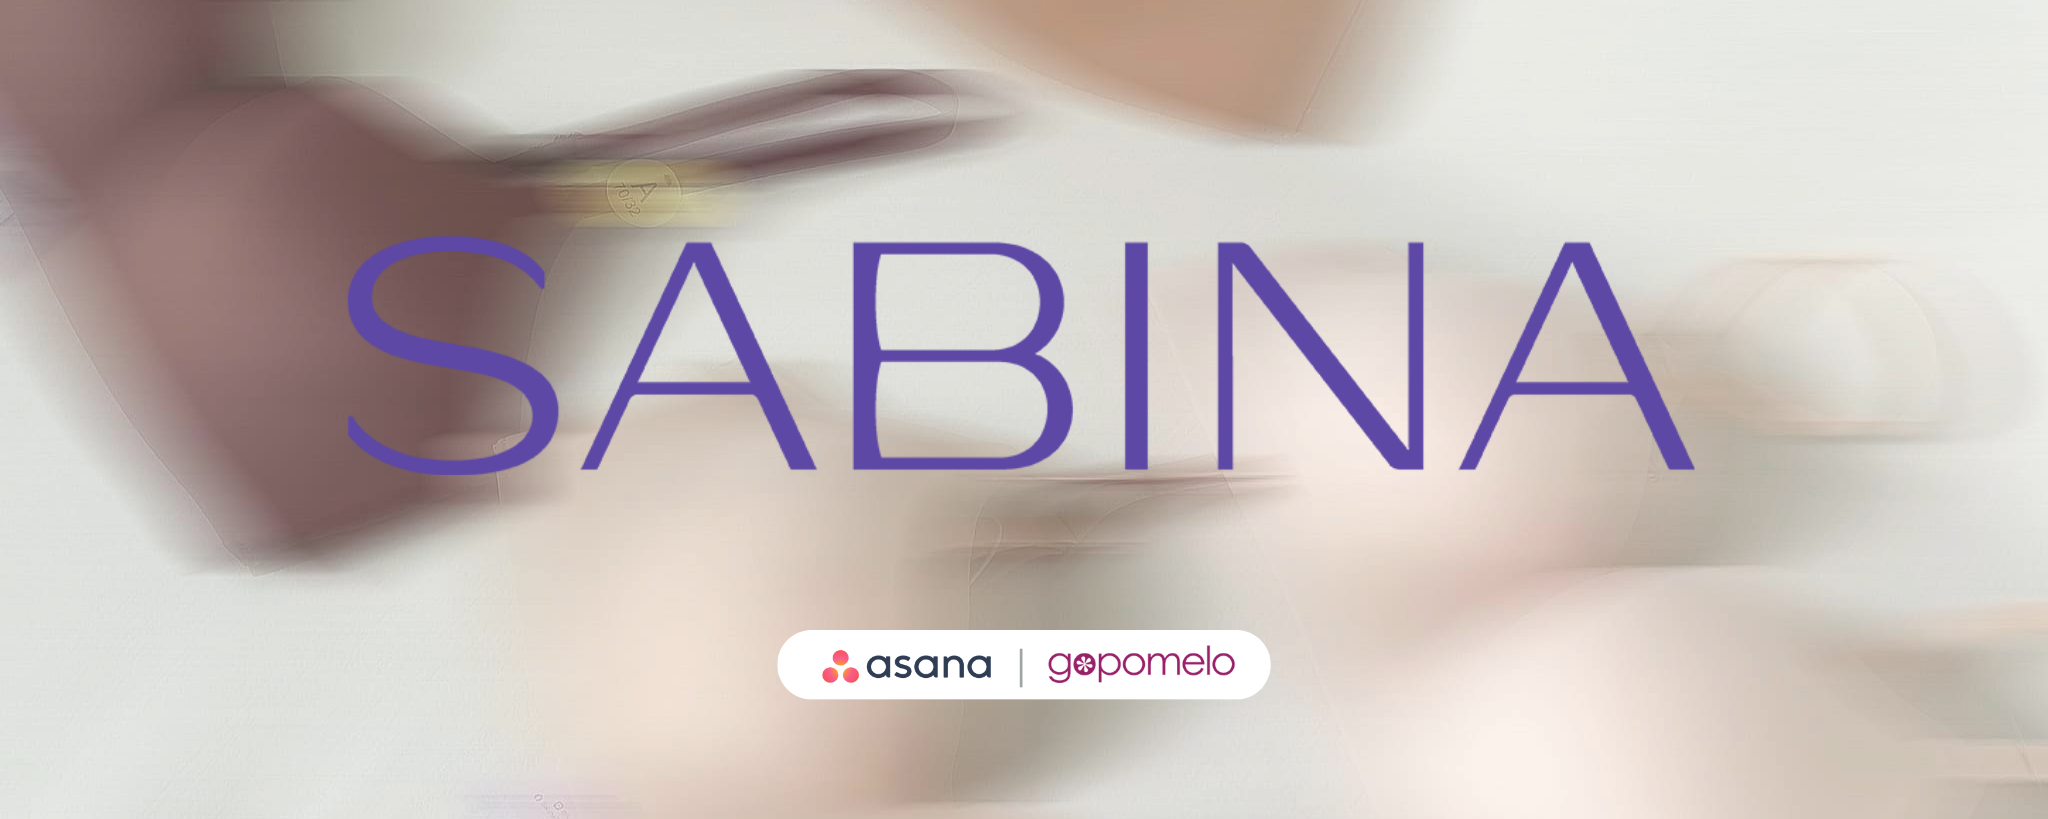 Customer Story | SABINA เพิ่มประสิทธิภาพในการทำงานและการสื่อสารภายในองค์กรด้วย Asana Workflow Management